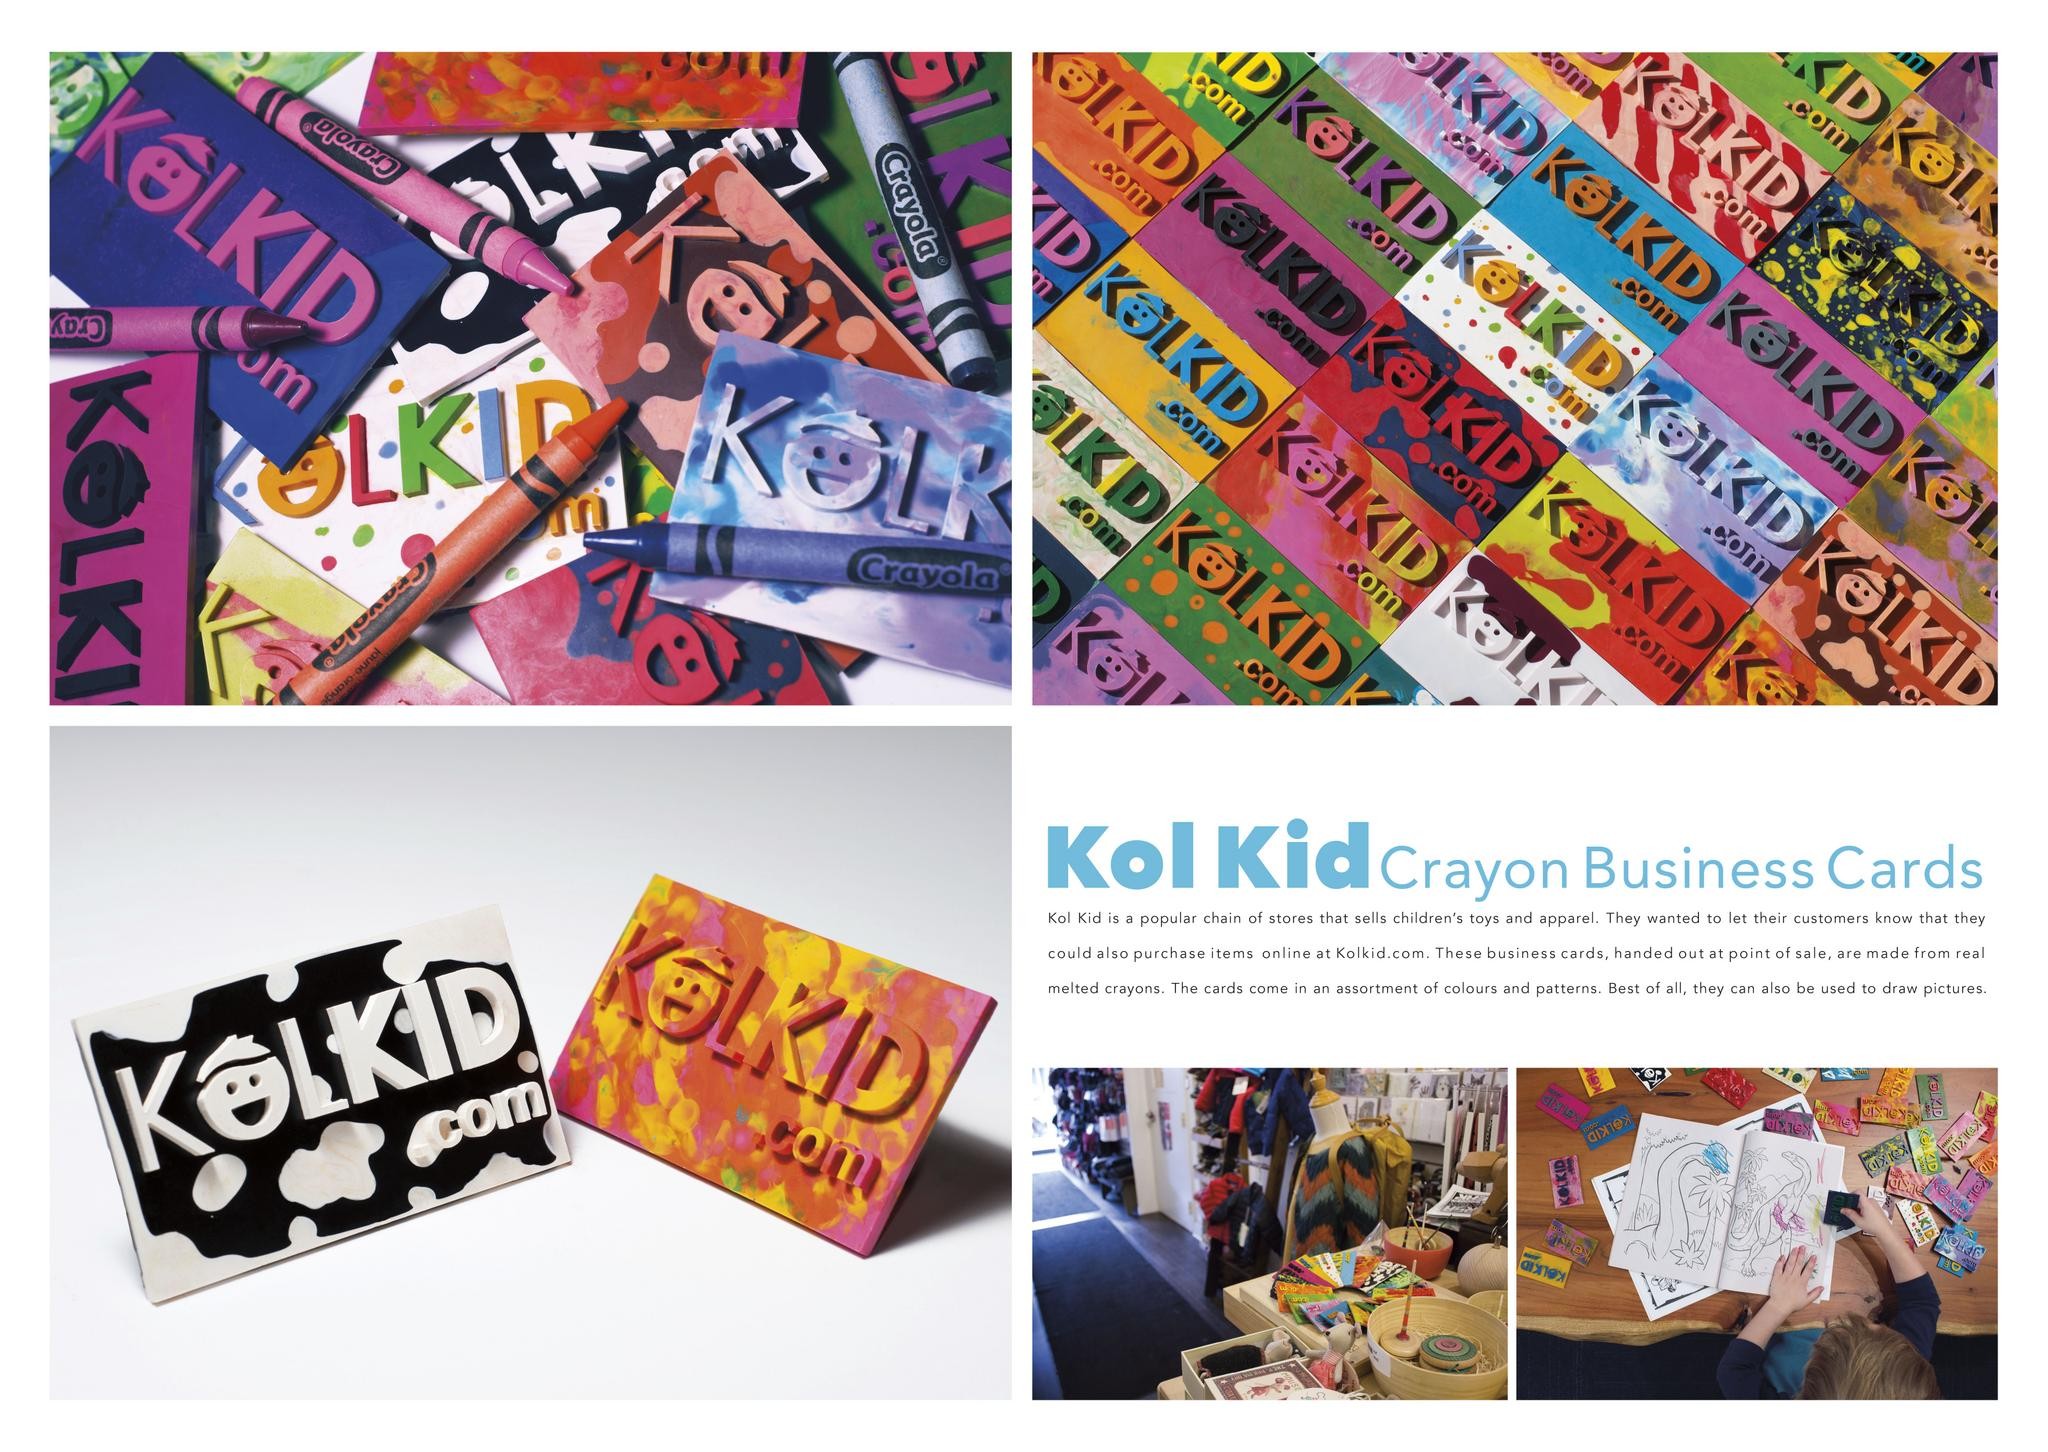 Kol Kid Crayon Business Cards